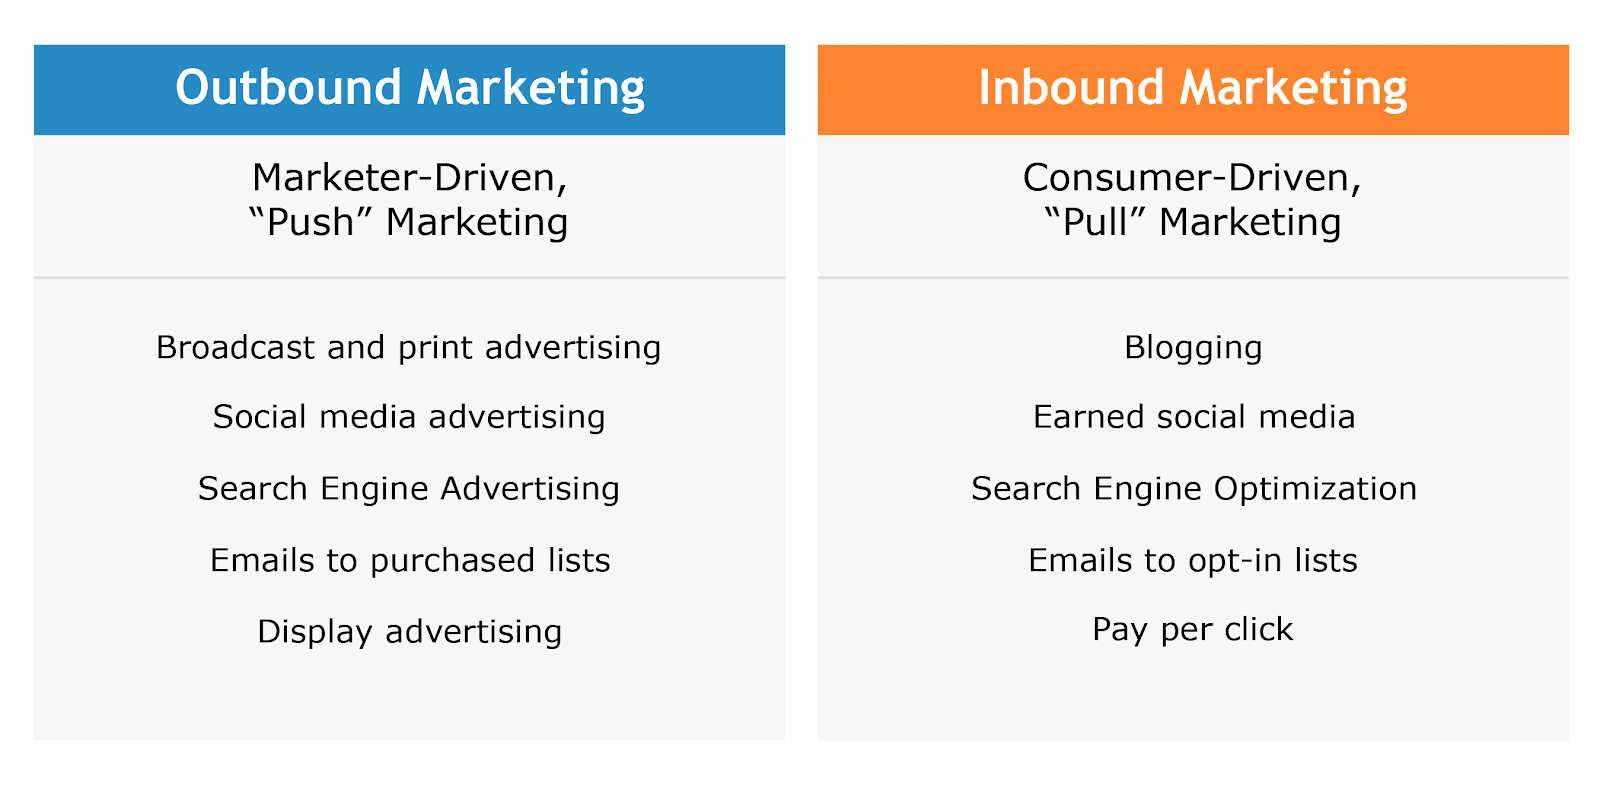 inbound lead generation - outbound and inbound marketing comparison